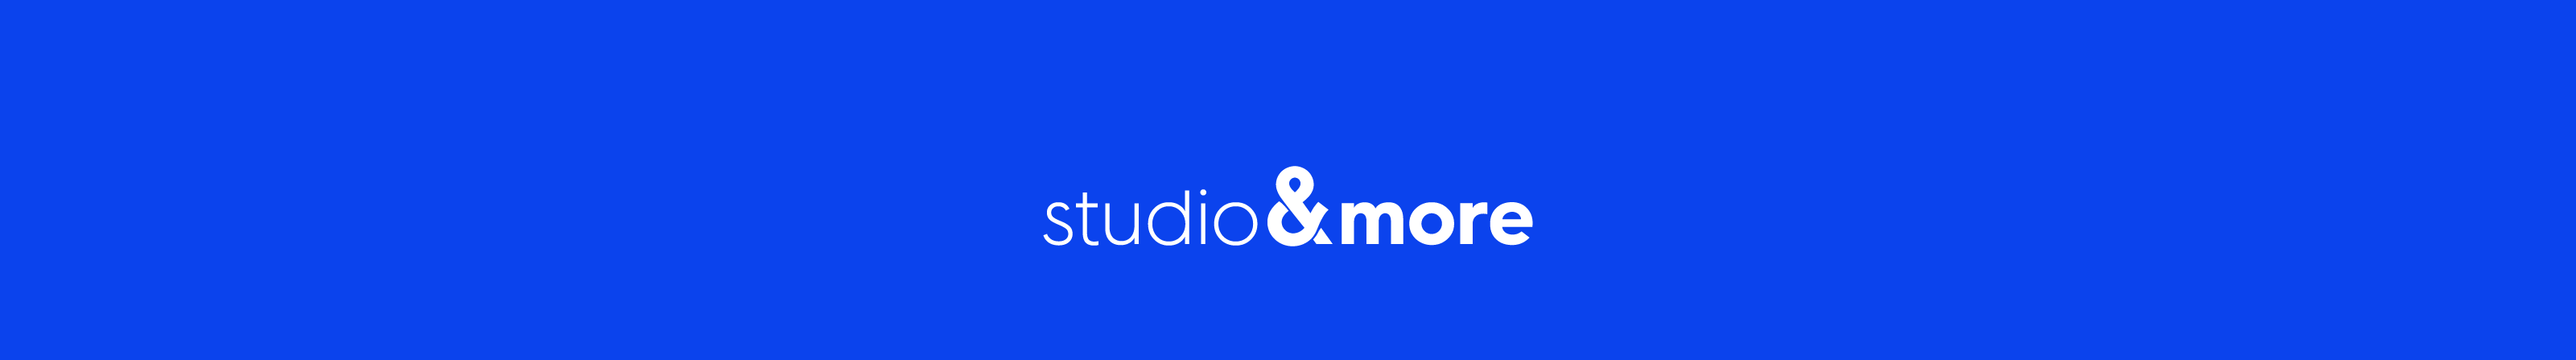 studio &more's profile banner